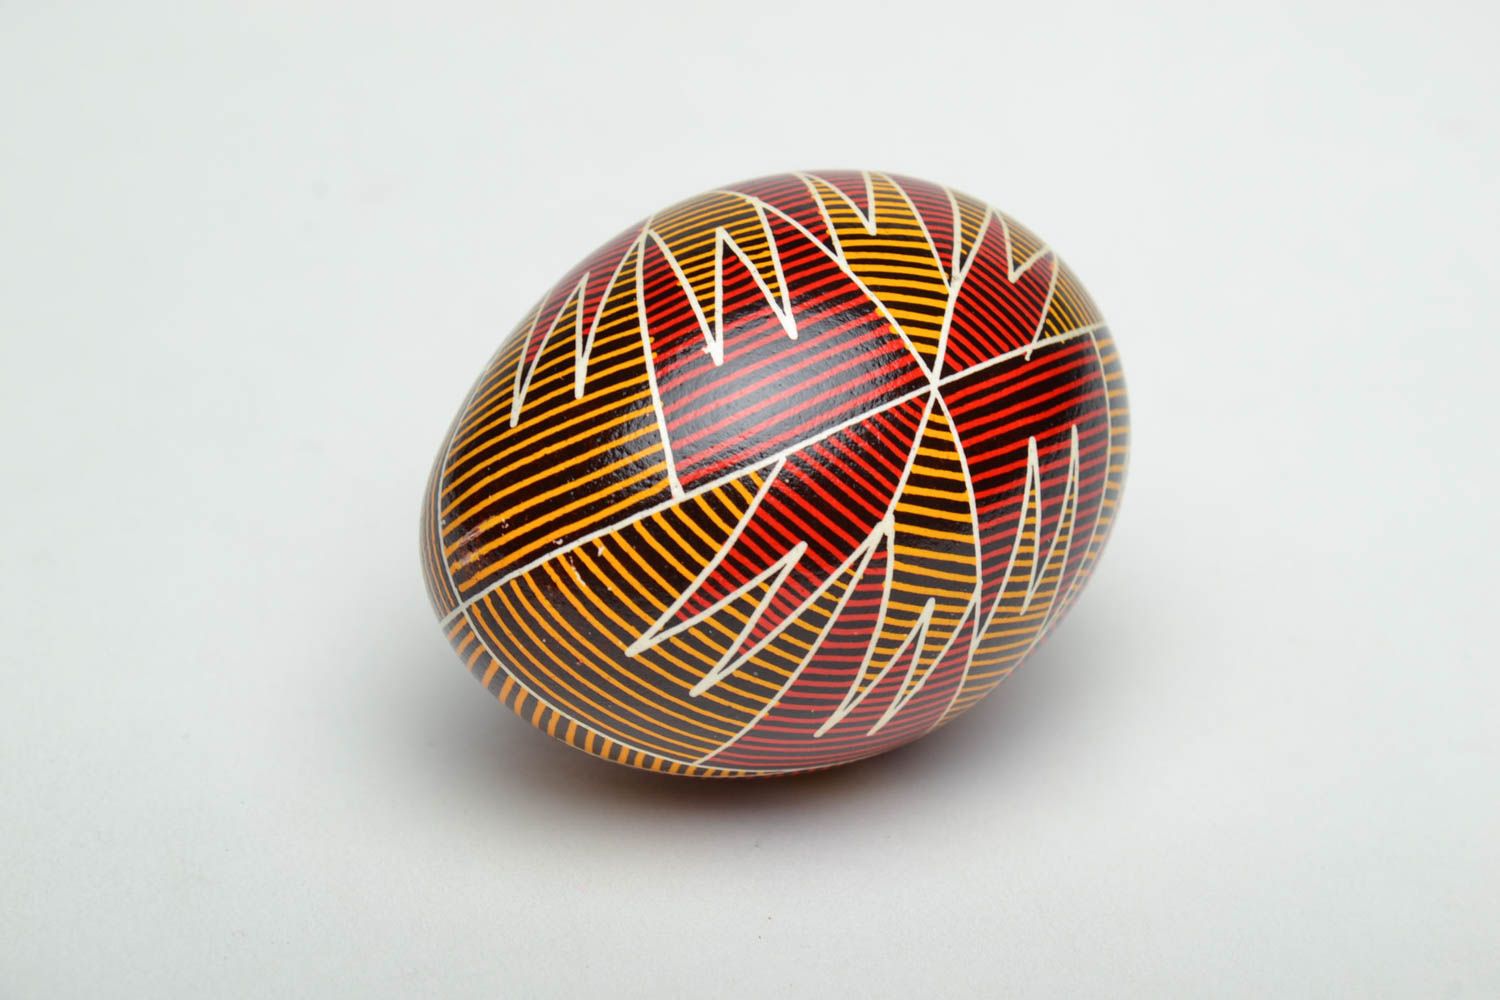 Huevo de Pascua decorado con tintes anilinas foto 4